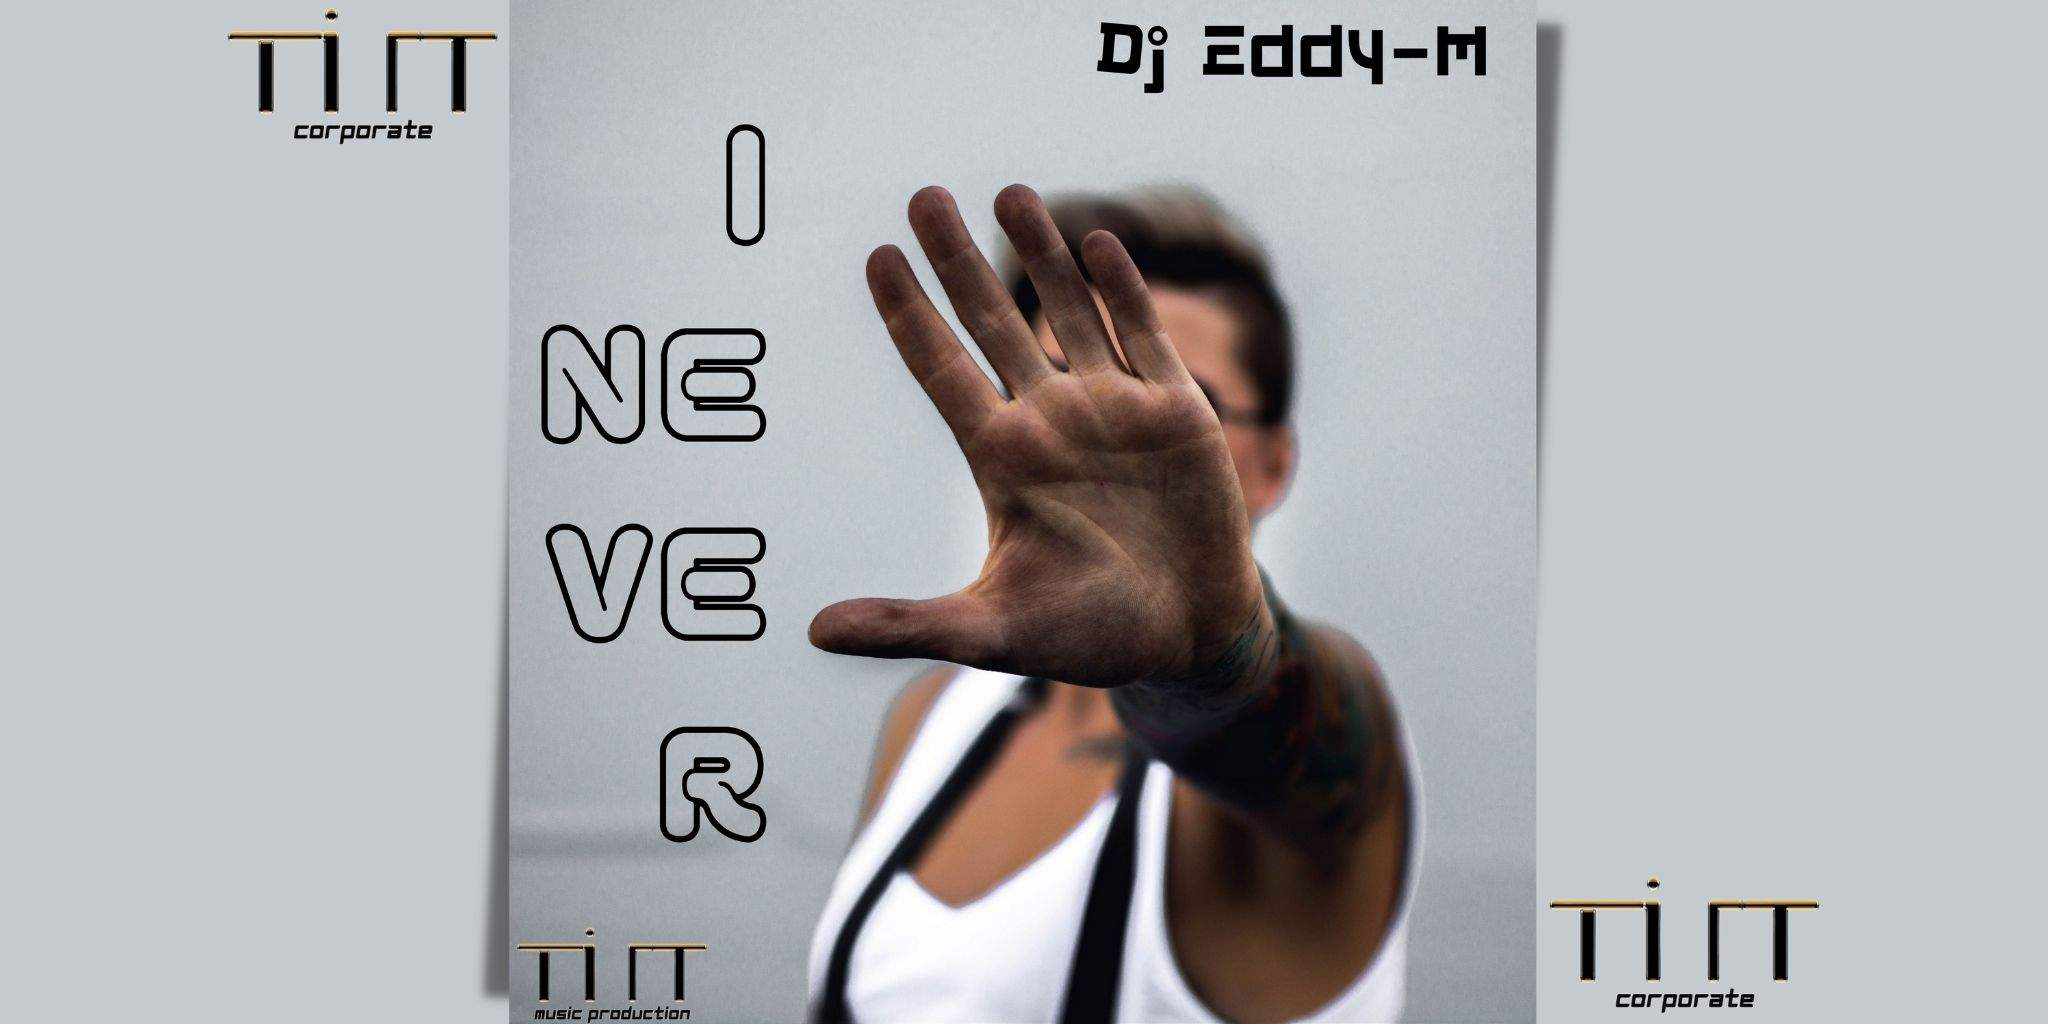 I NEVER è il nuovo singoli di Dj Eddy-M